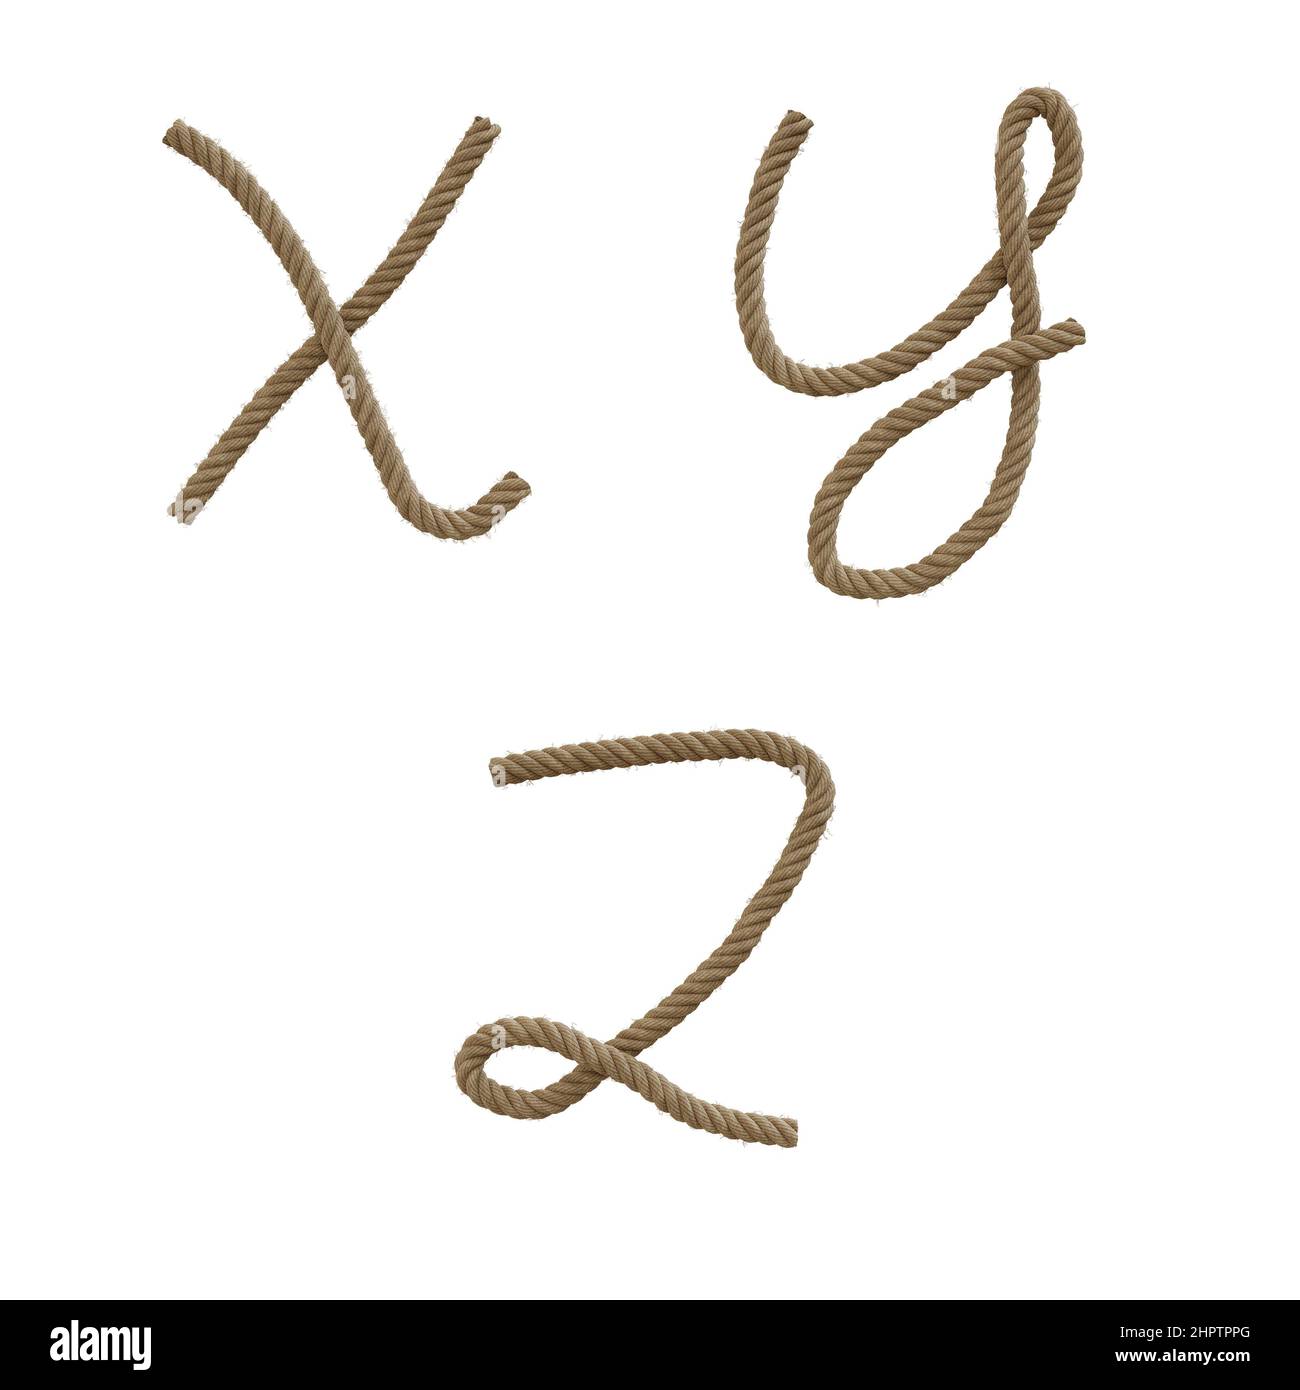 3D Darstellung von Hanfseil Großbuchstaben Alphabet - Buchstaben X-Z Stockfoto